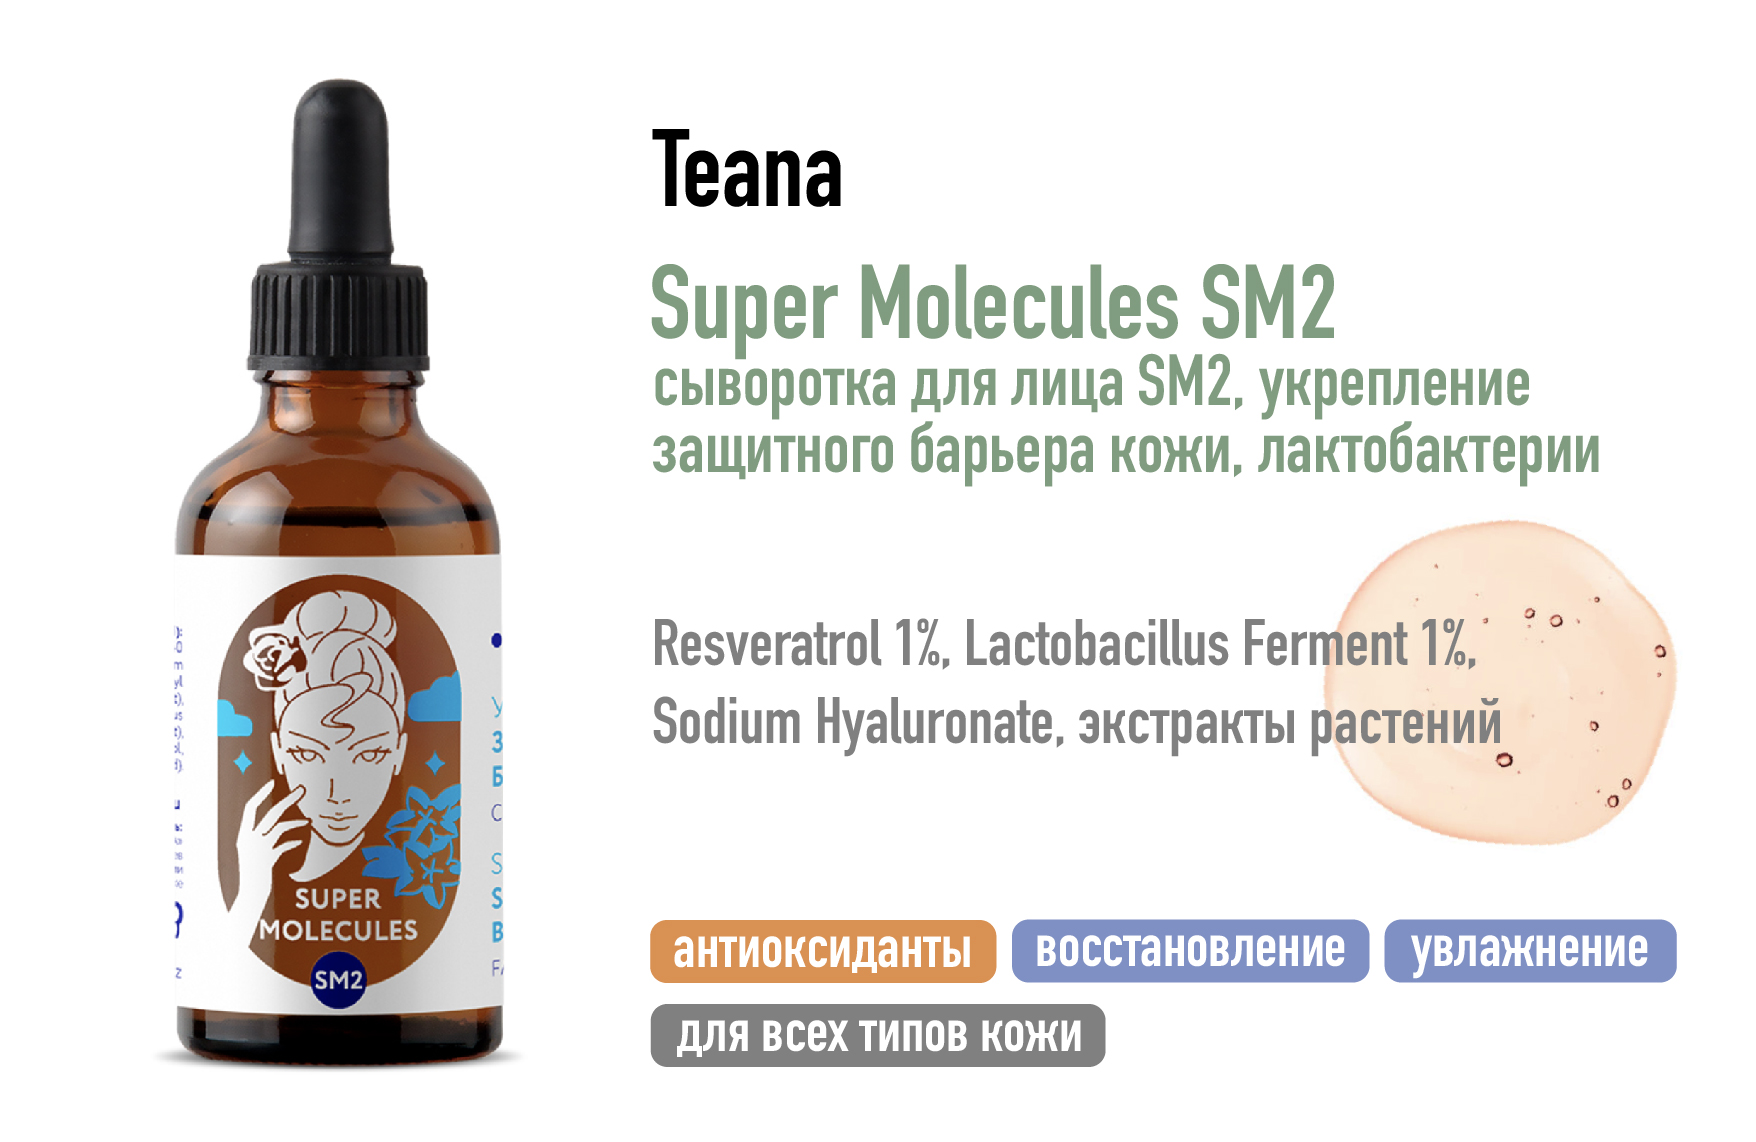 Teana Super Molecules SM2 / Сыворотка для лица, укрепление защитного барьера кожи Лактобактерии